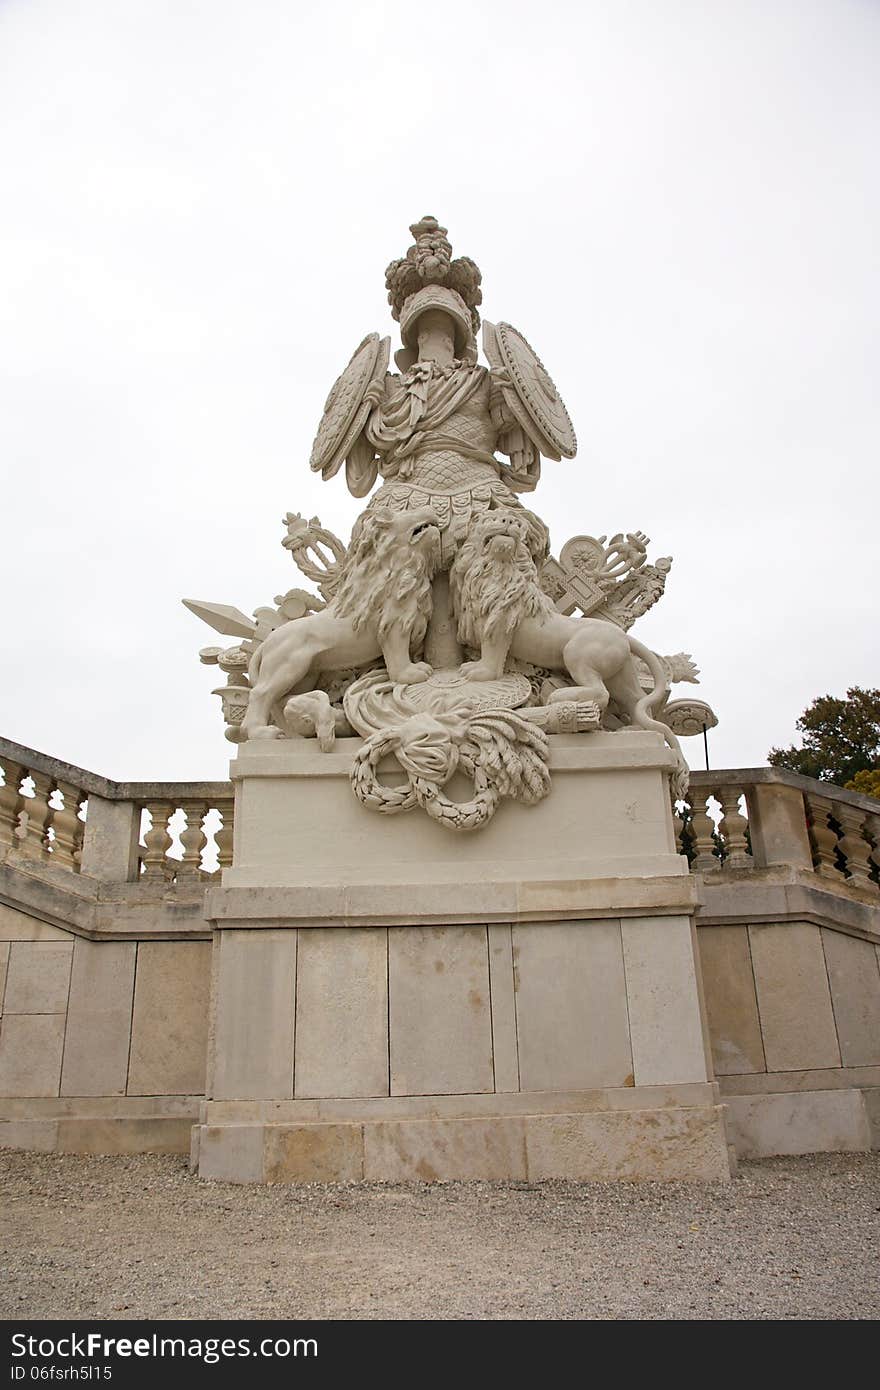 Sculptures in the schonbrunn palace. Sculptures in the schonbrunn palace